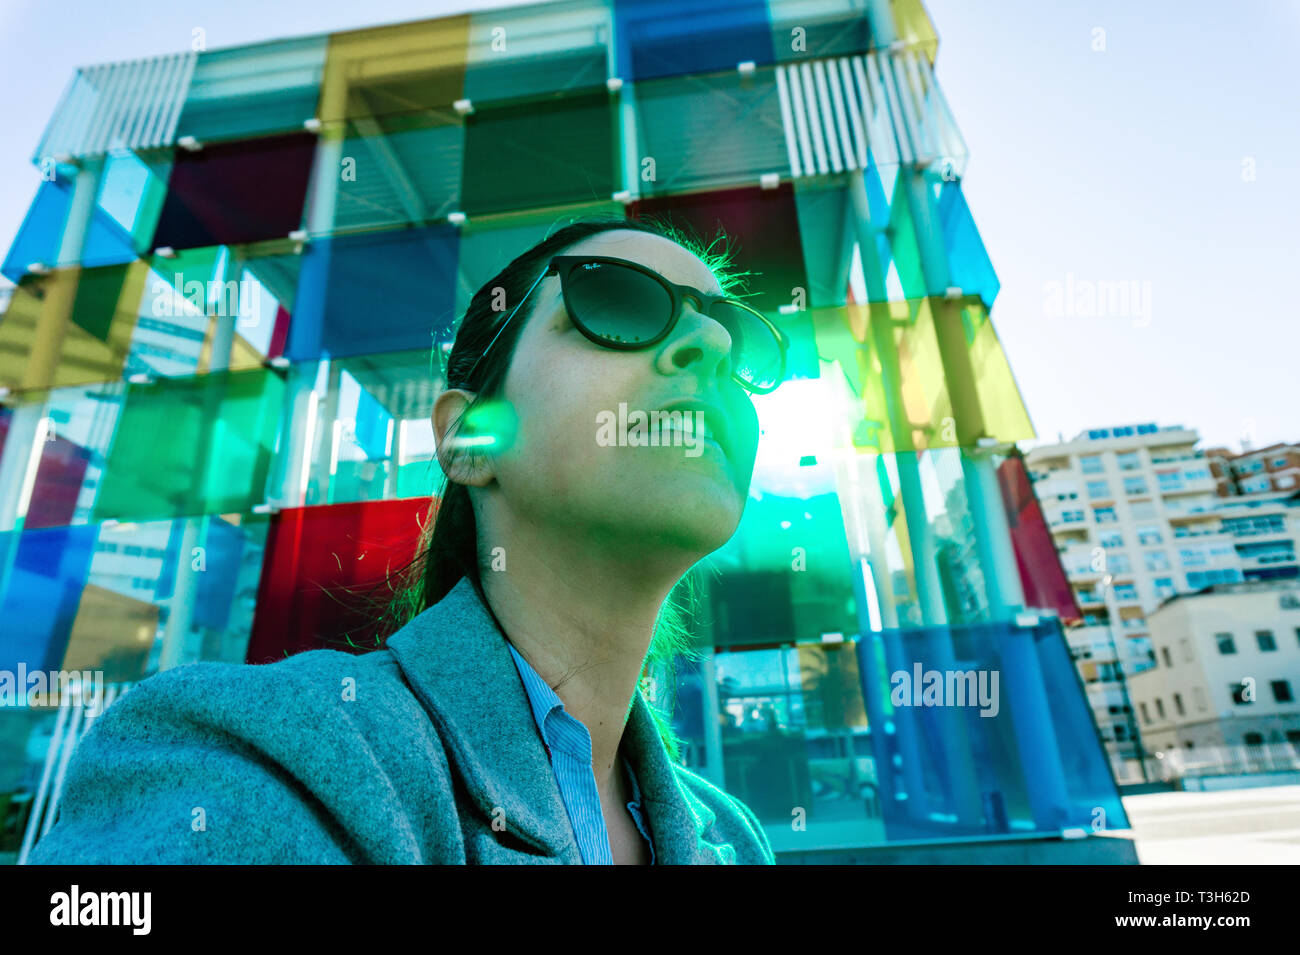 Espagne, Malaga - 04.04.2019 : portrait de femme résumé lunettes rayban à côté du cube coloré Centre Pompidou à Malaga, Espagne en soleil Banque D'Images